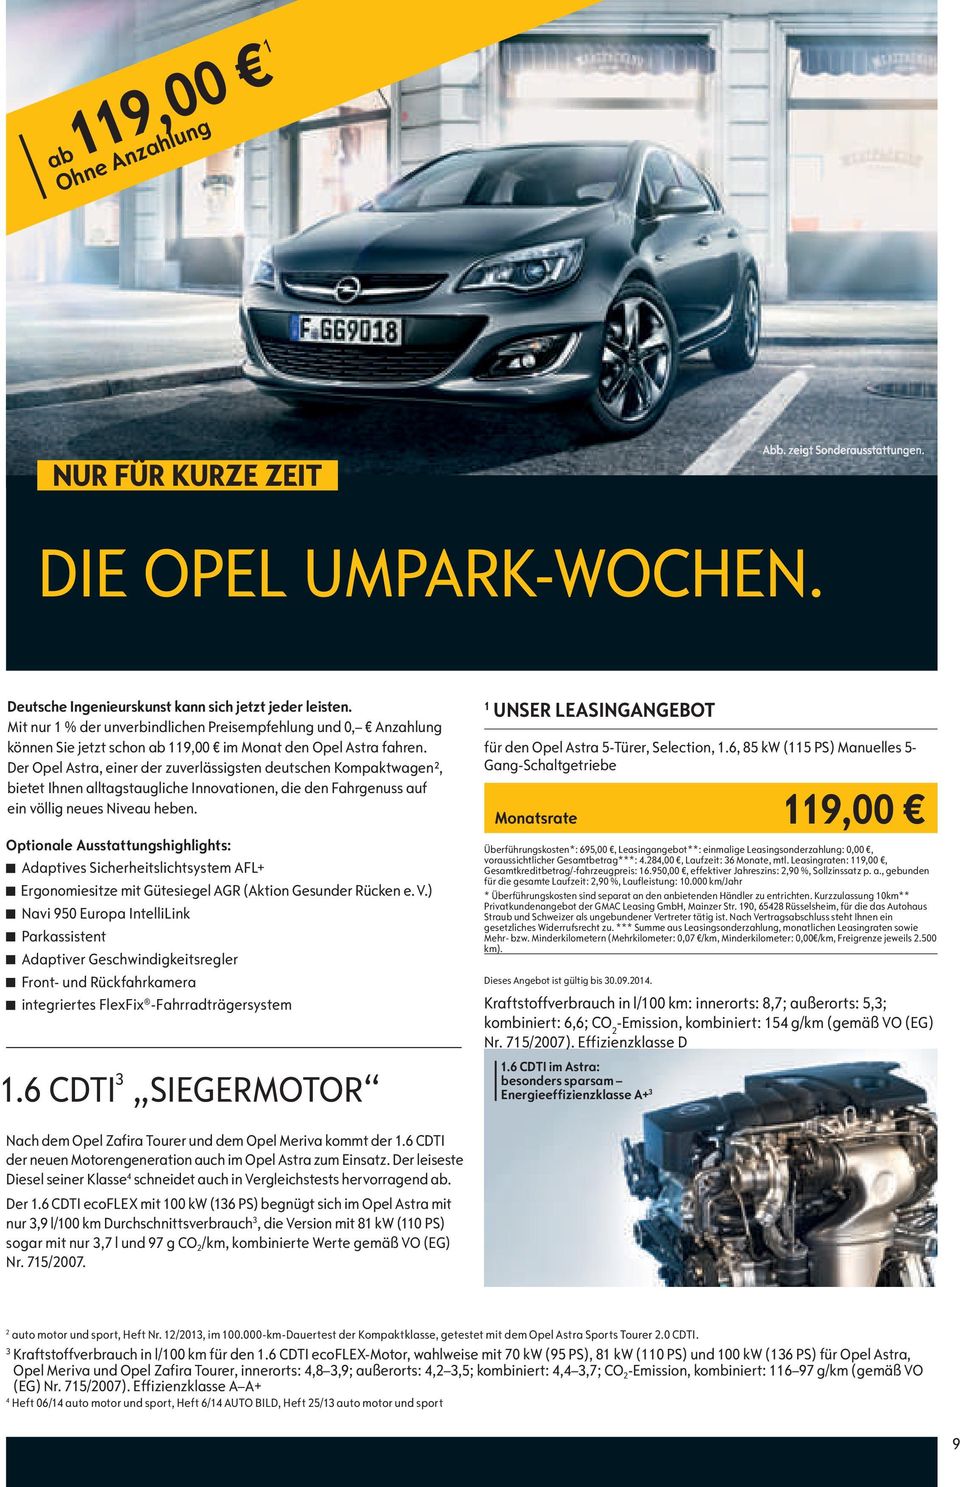 Der Opel Astra, einer der zuverlässigsten deutschen Kompaktwagen², bietet Ihnen alltagstaugliche Innovationen, die den Fahrgenuss auf ein völlig neues Niveau heben.